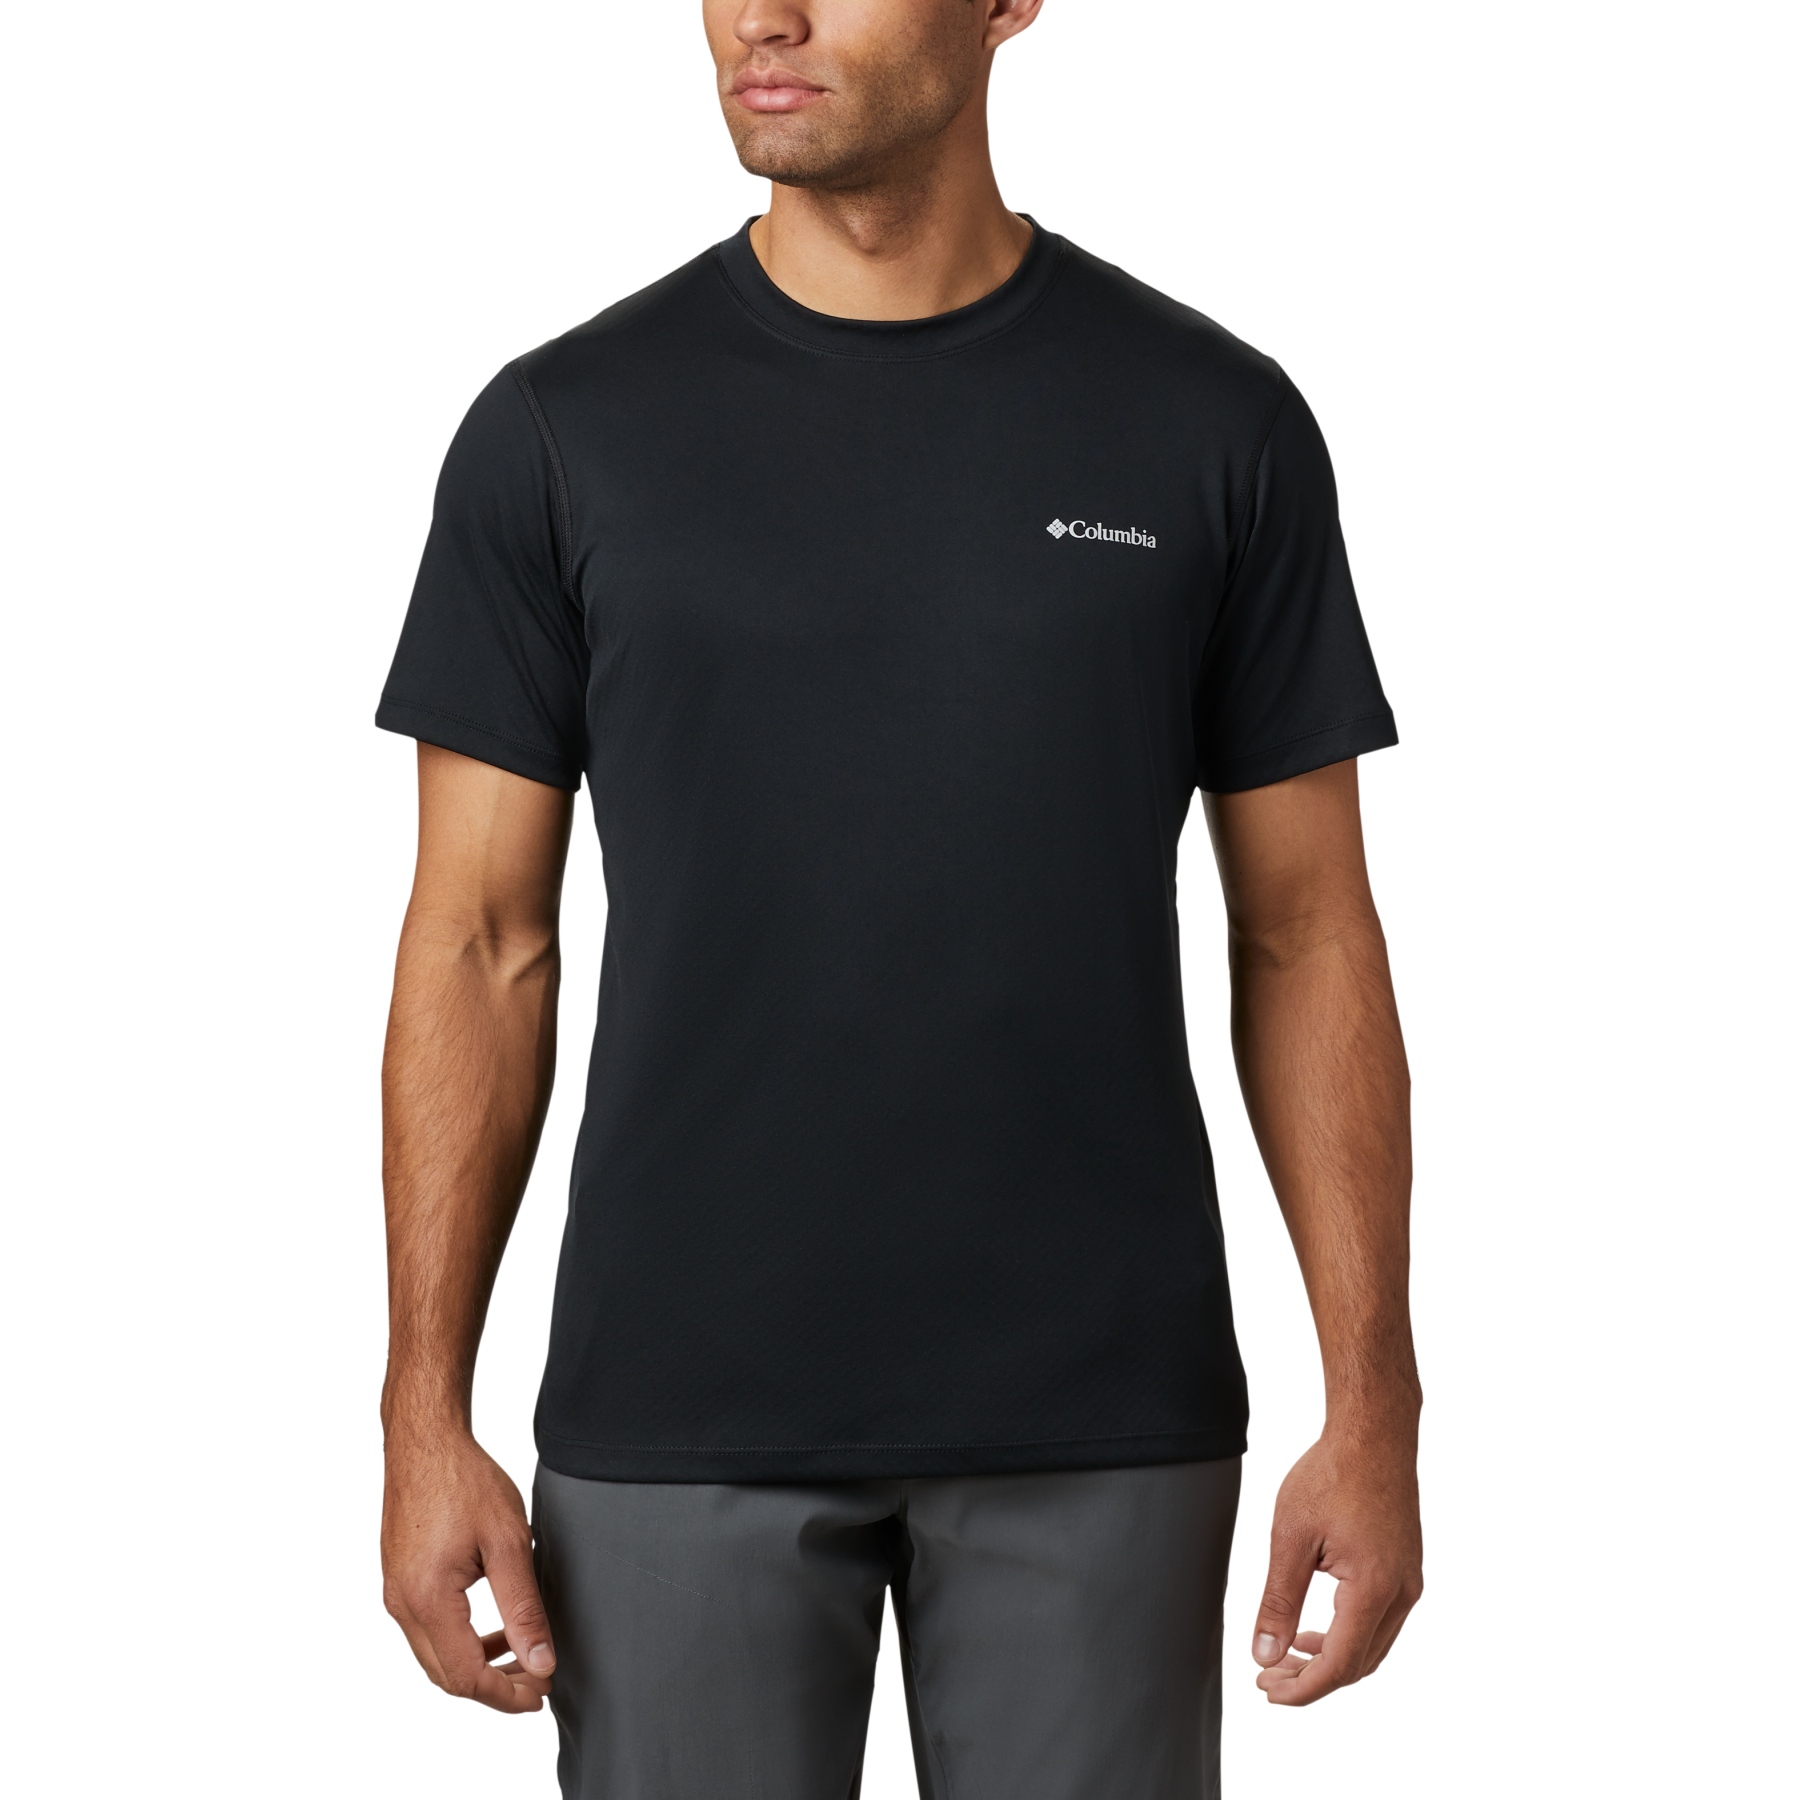 Productfoto van Columbia Zero Rules T-Shirt Heren - Zwart